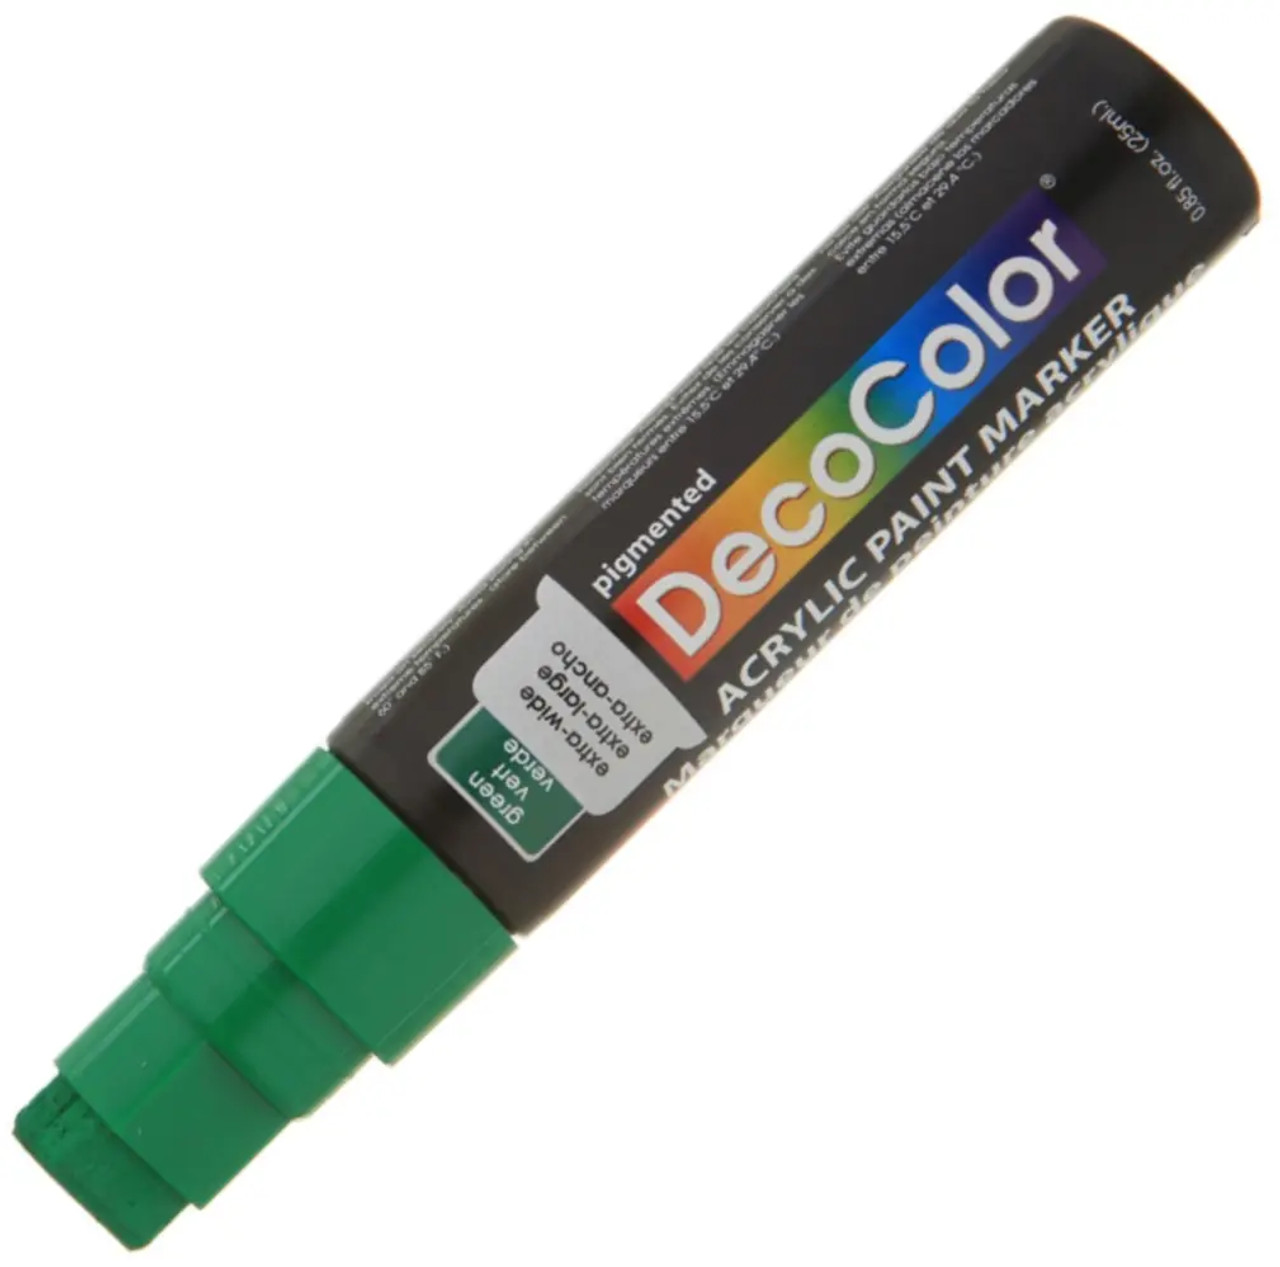 DecoColor Oil Paint Markers – Jerrys Artist Outlet